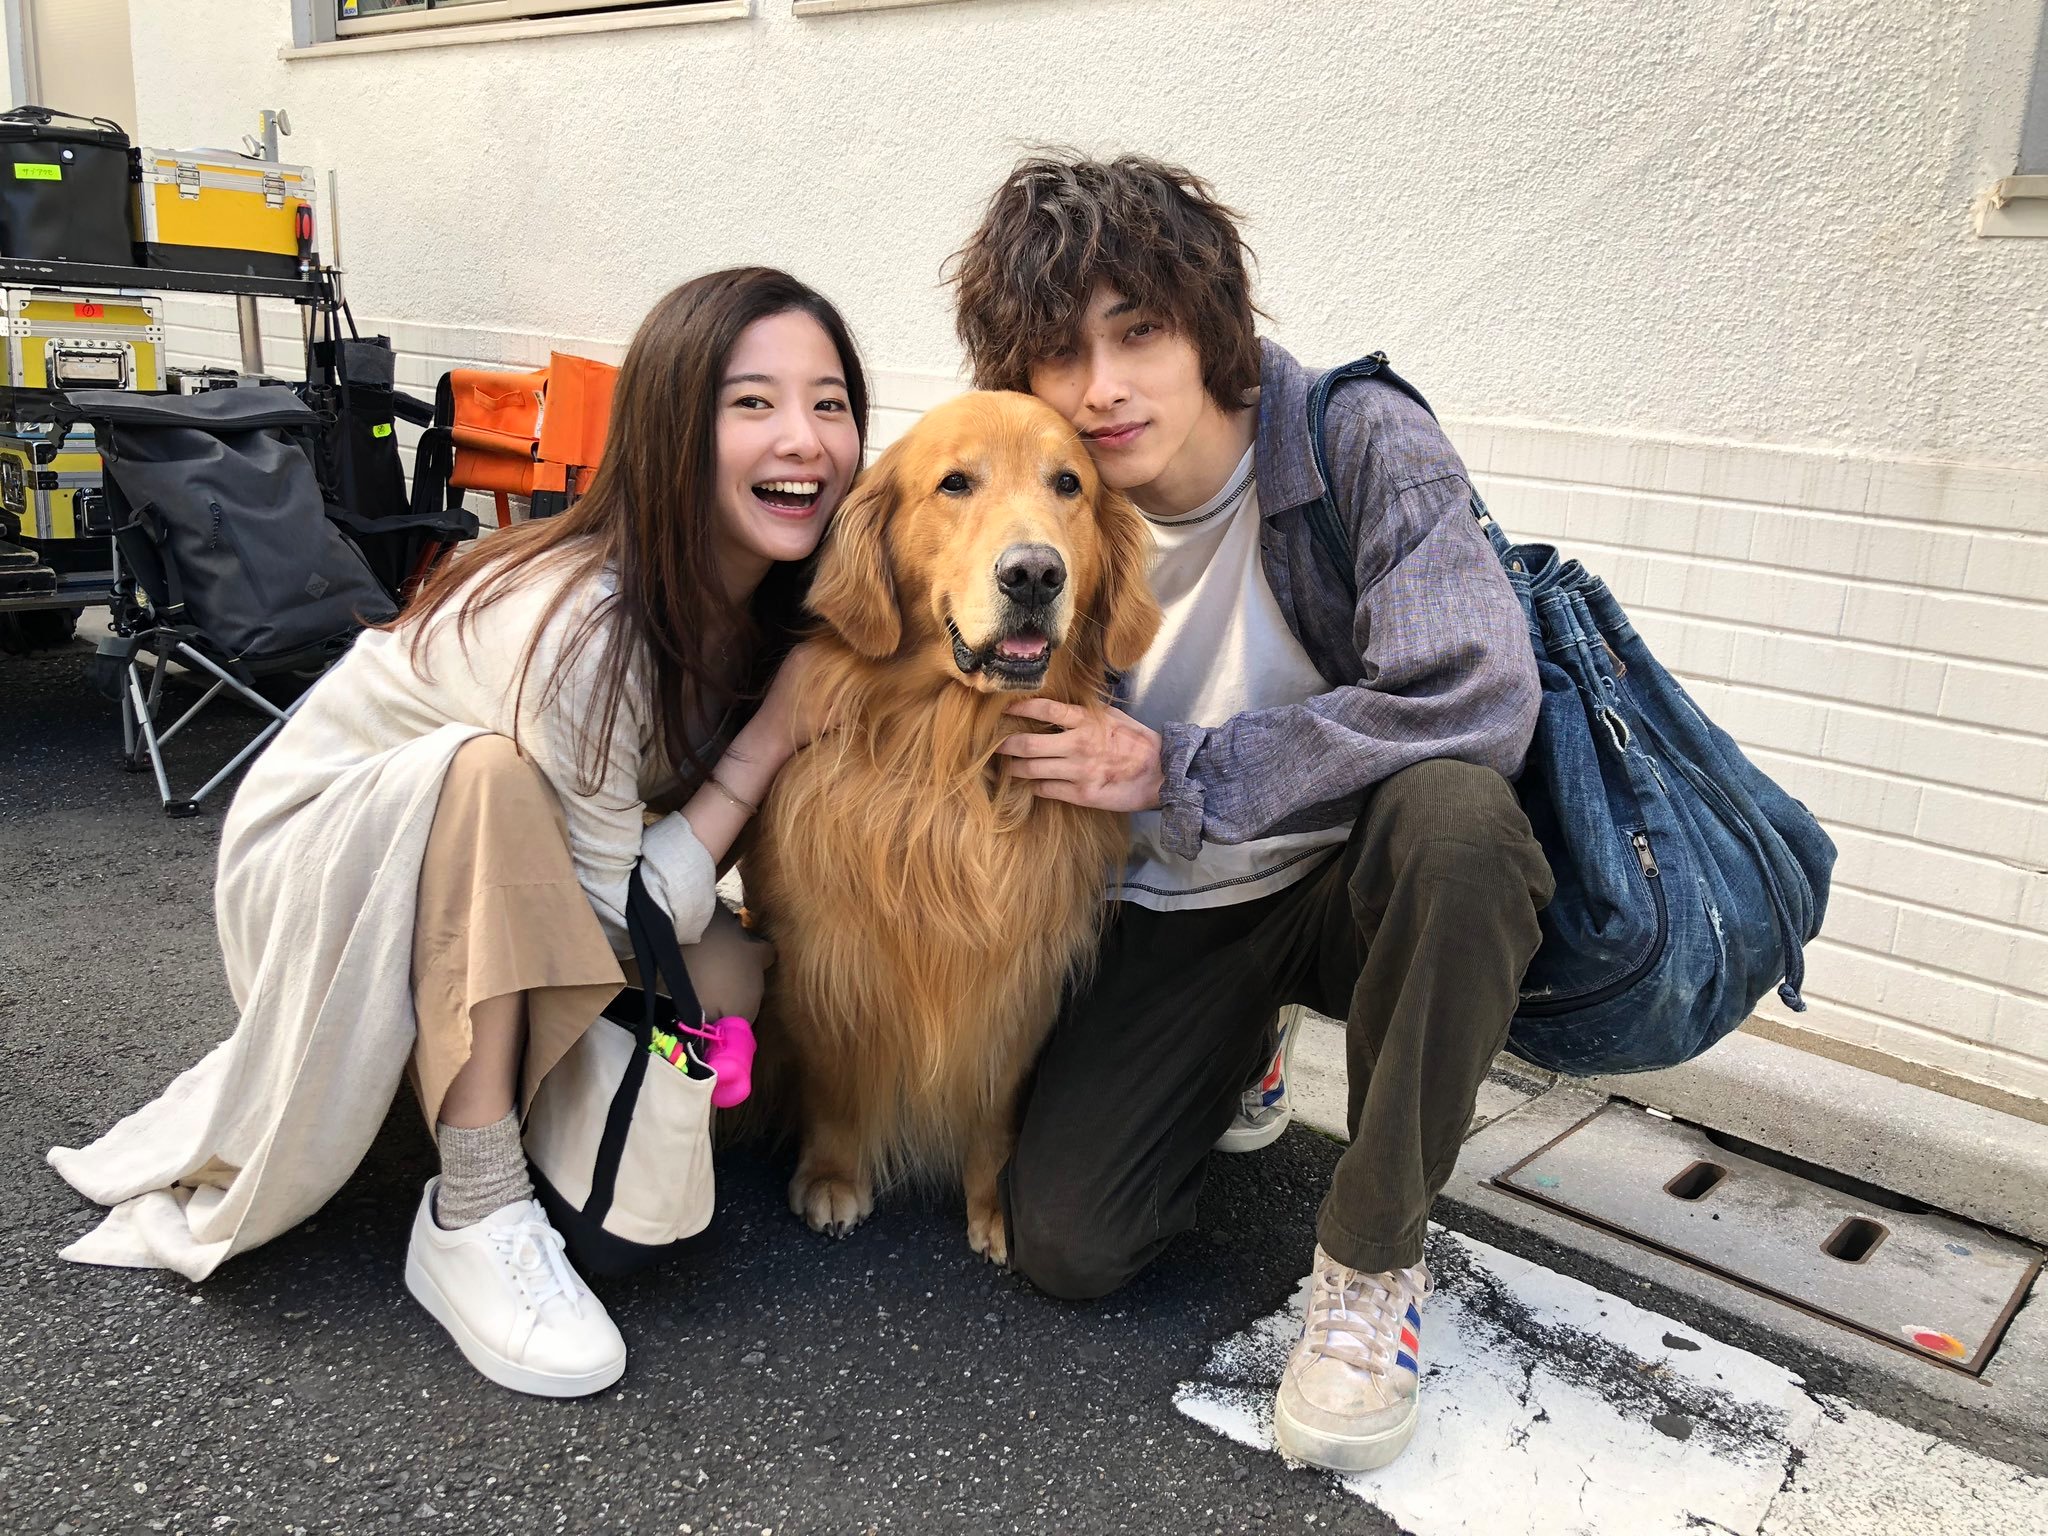 ʟᴀʟᴀɪɴᴇ Aibs2 Yoshitaka Yuriko And Yokohama Ryusei On Set Of Their Film Kimi No Me Ga Toikakete Iru They Re No Doubt The Perfect Actors For This Film